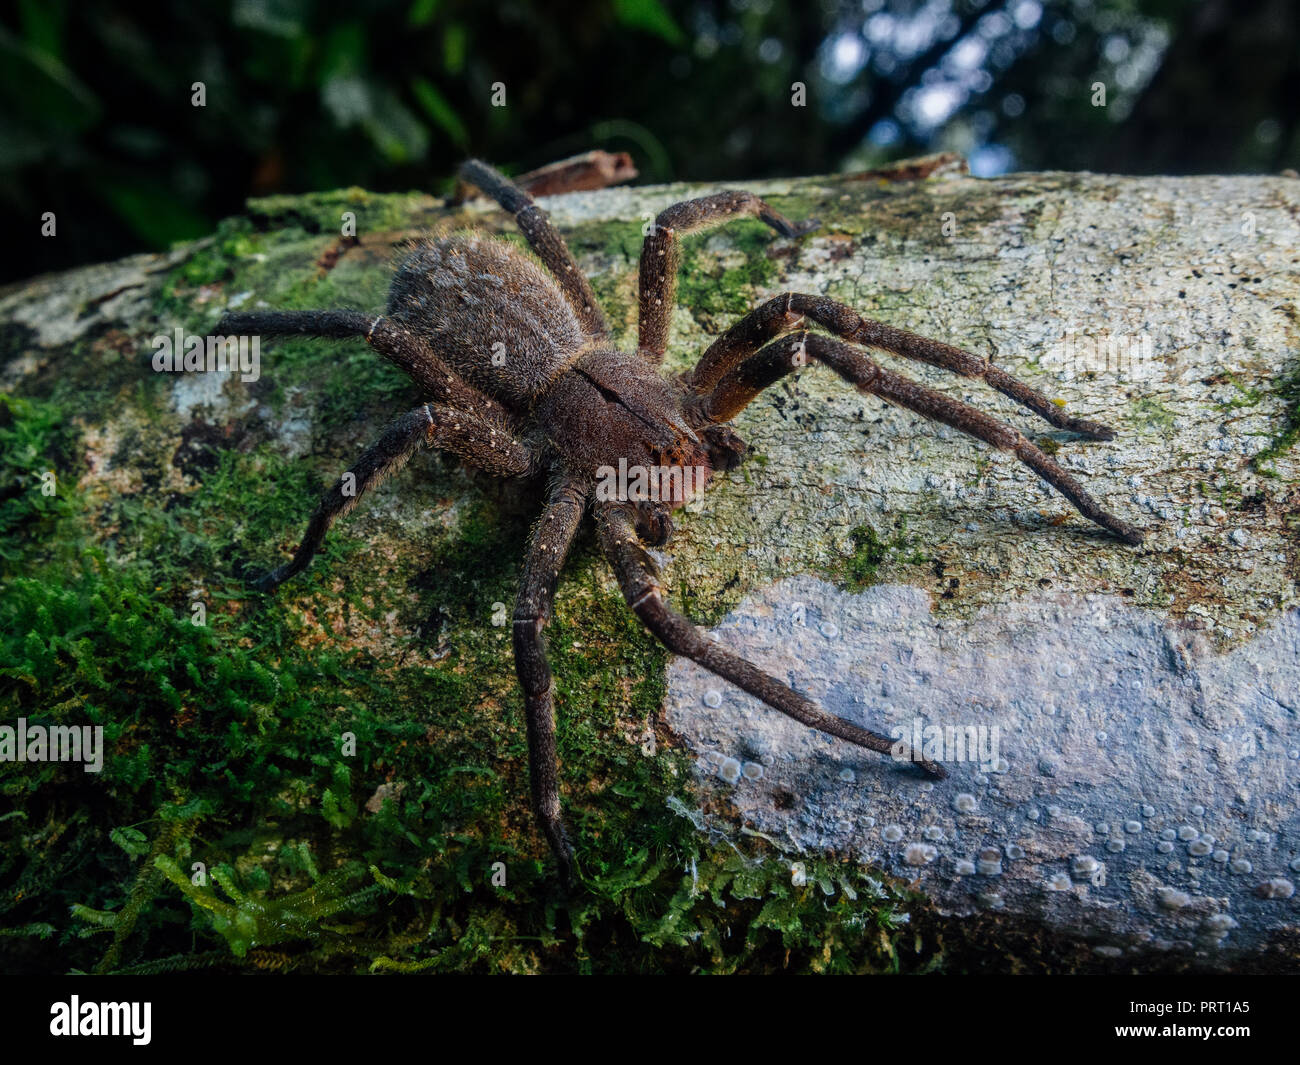 L'errance brésilien venimeux (araignée Phoneutria aranha, armadeira) marcher sur un tronc d'arbre avec un fond de forêt. Depuis le sud-est du Brésil. Banque D'Images